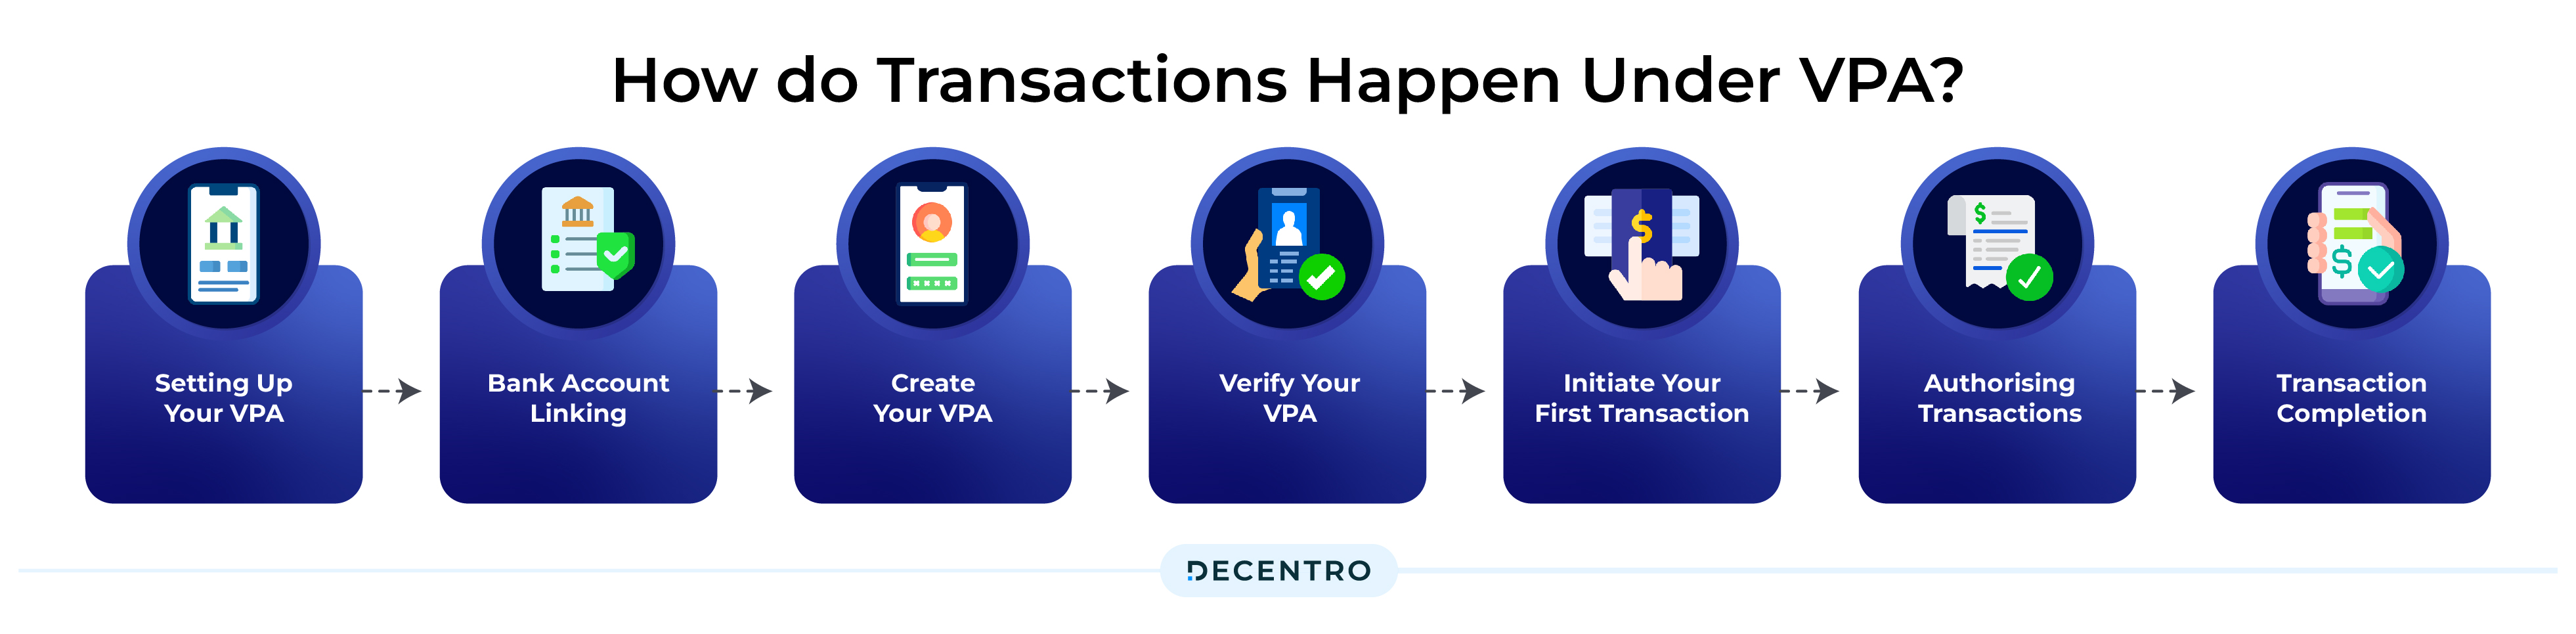 How Do Transactions Happen Under VPA?